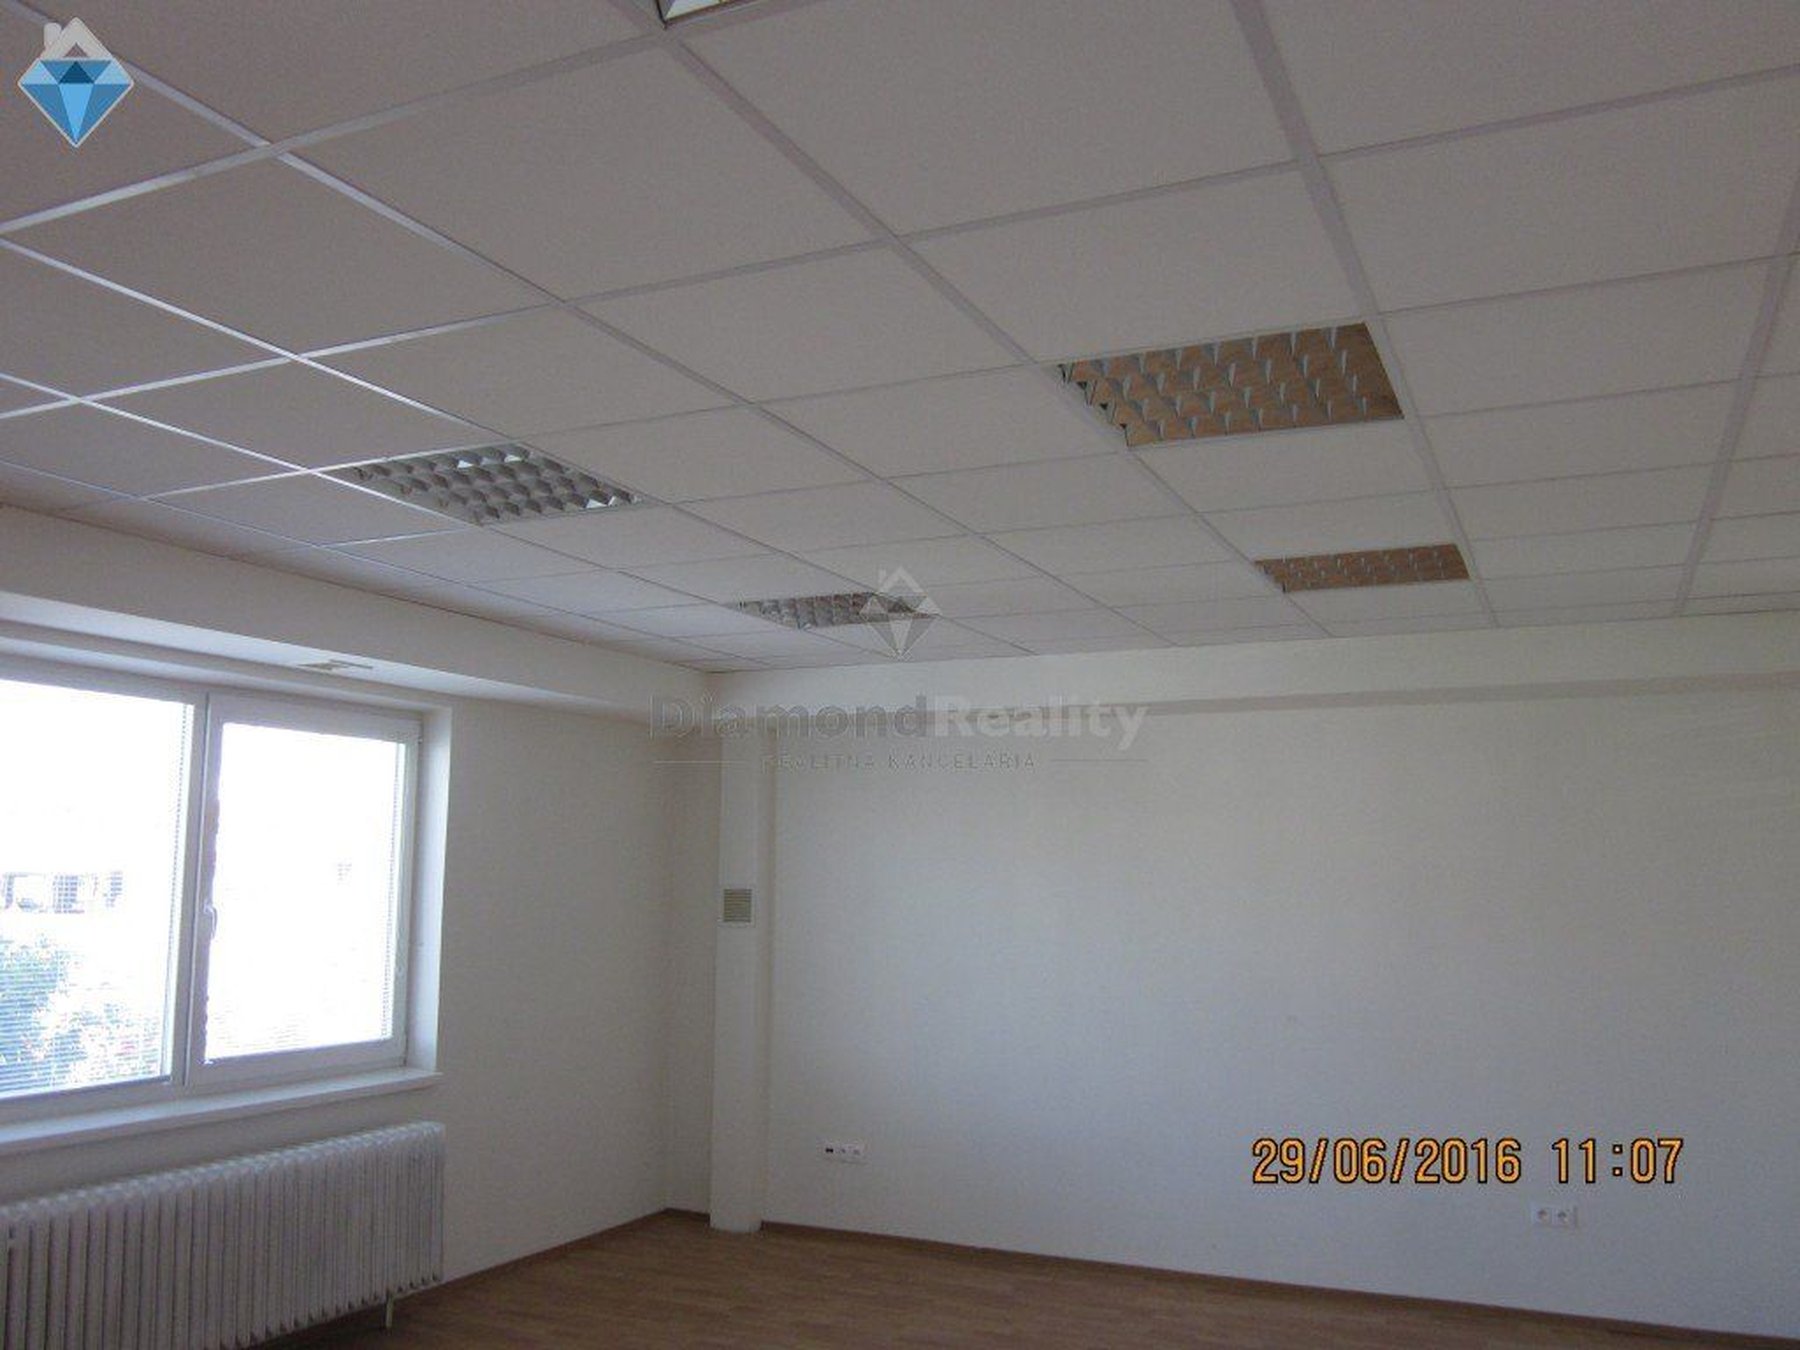 Kancelárie, administratívne priestory 39 m² , Kompletná rekonštrukcia